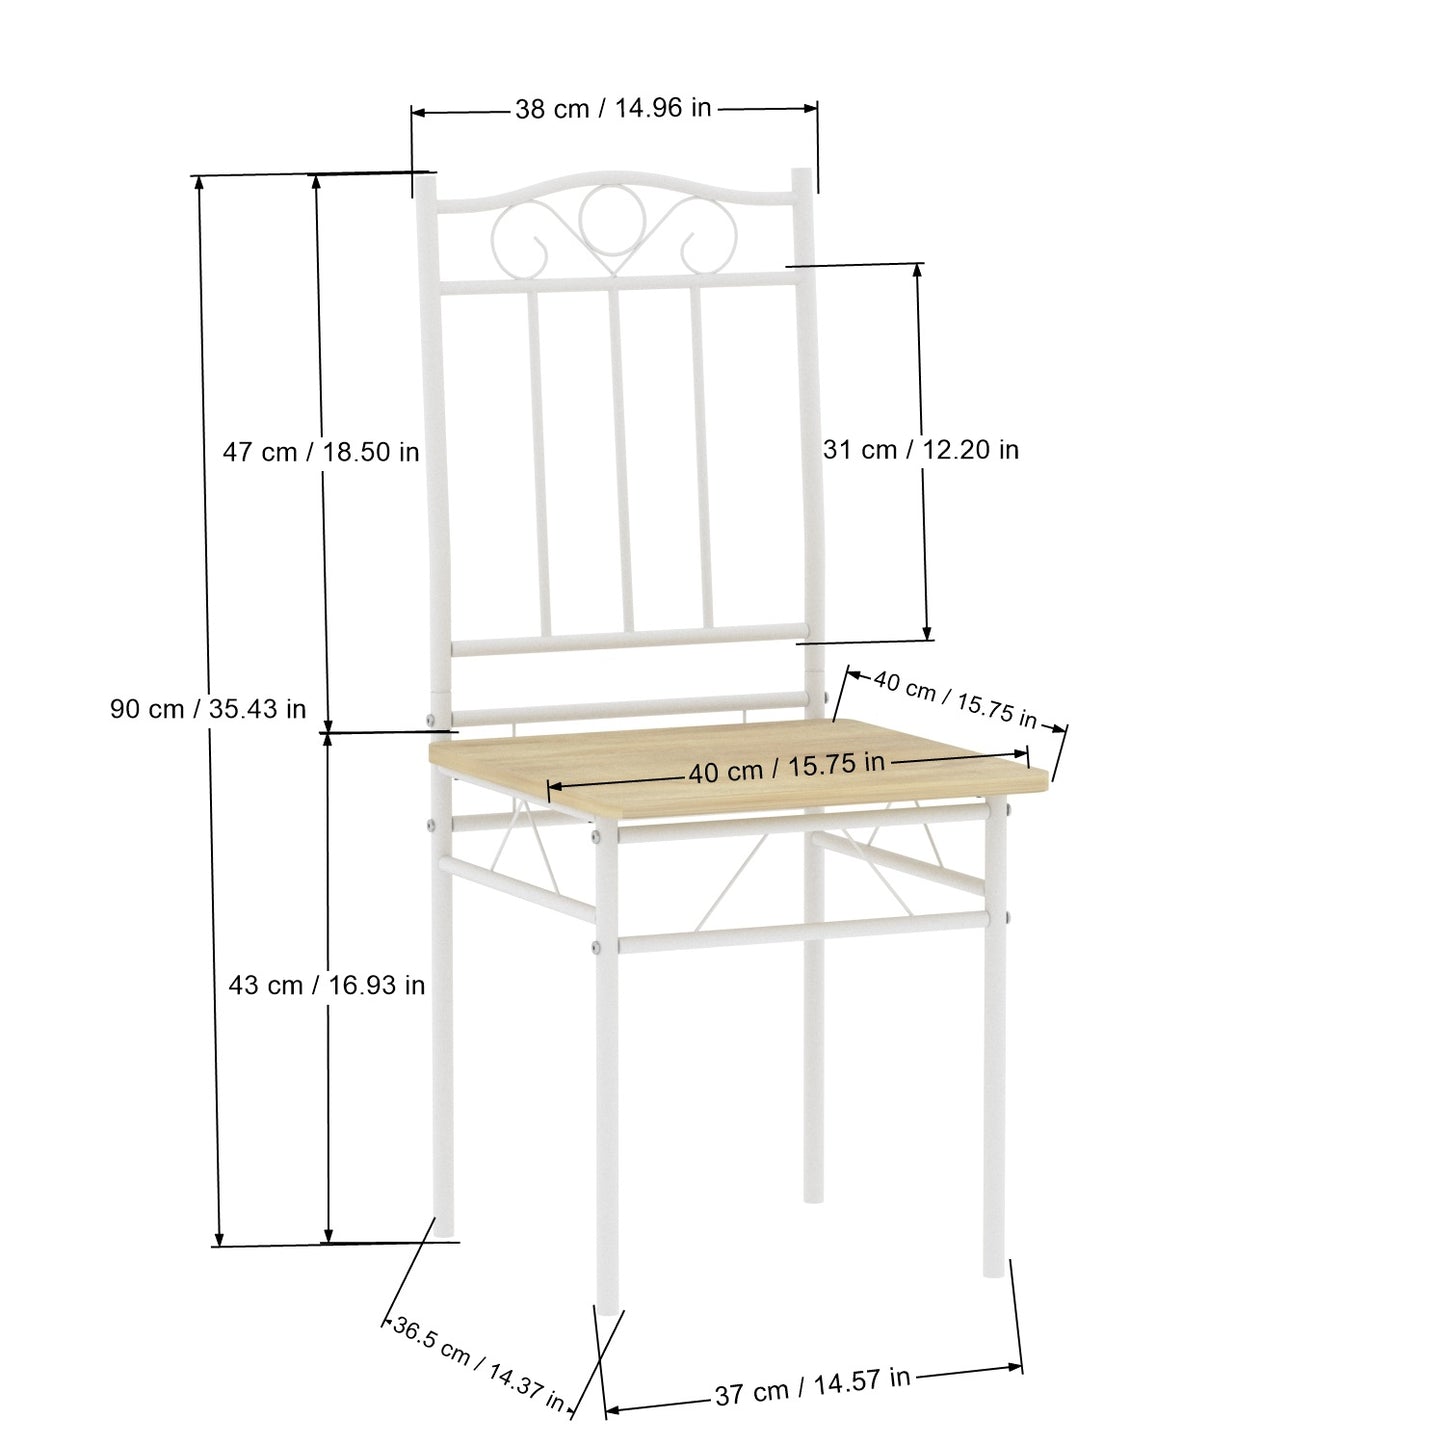 Lot de 4 chaises en hêtre clair avec pieds en fer blanc de style industriel, adaptées pour cuisine, salle à manger, salon